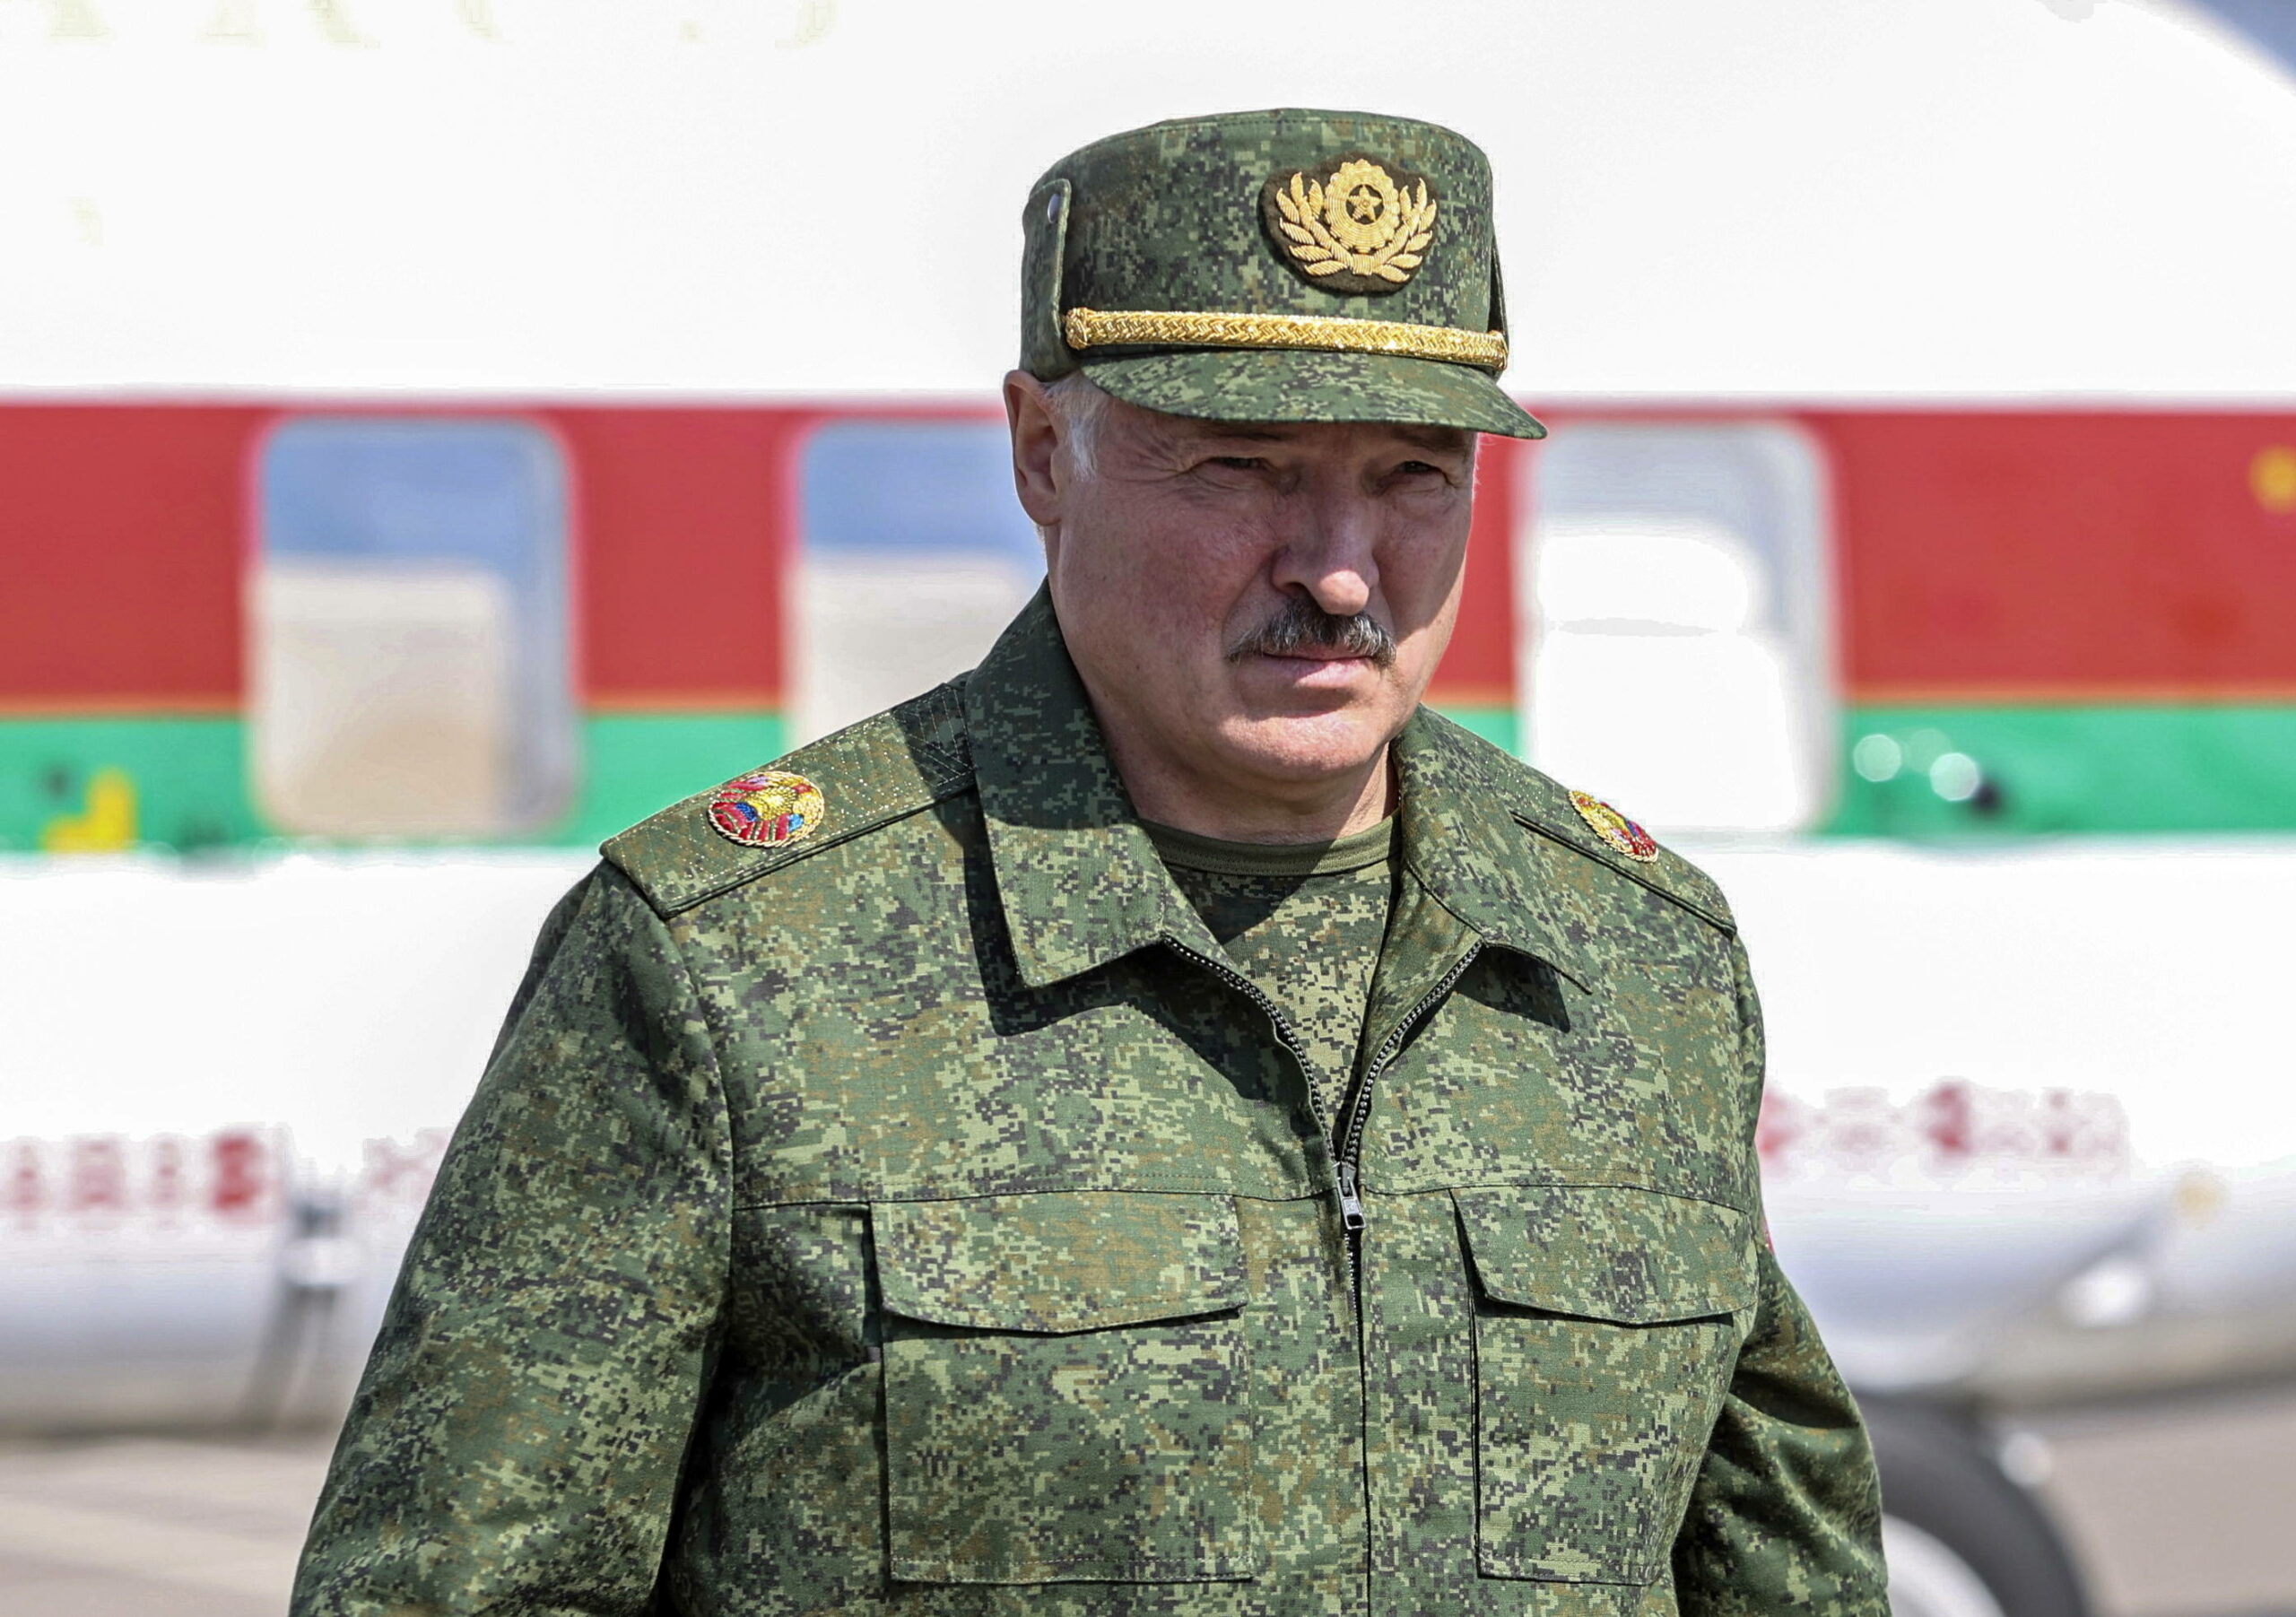 Лукашенко: Украина стягивает войска к белорусской границе, мы ответим развертыванием целого контингента нашей армии